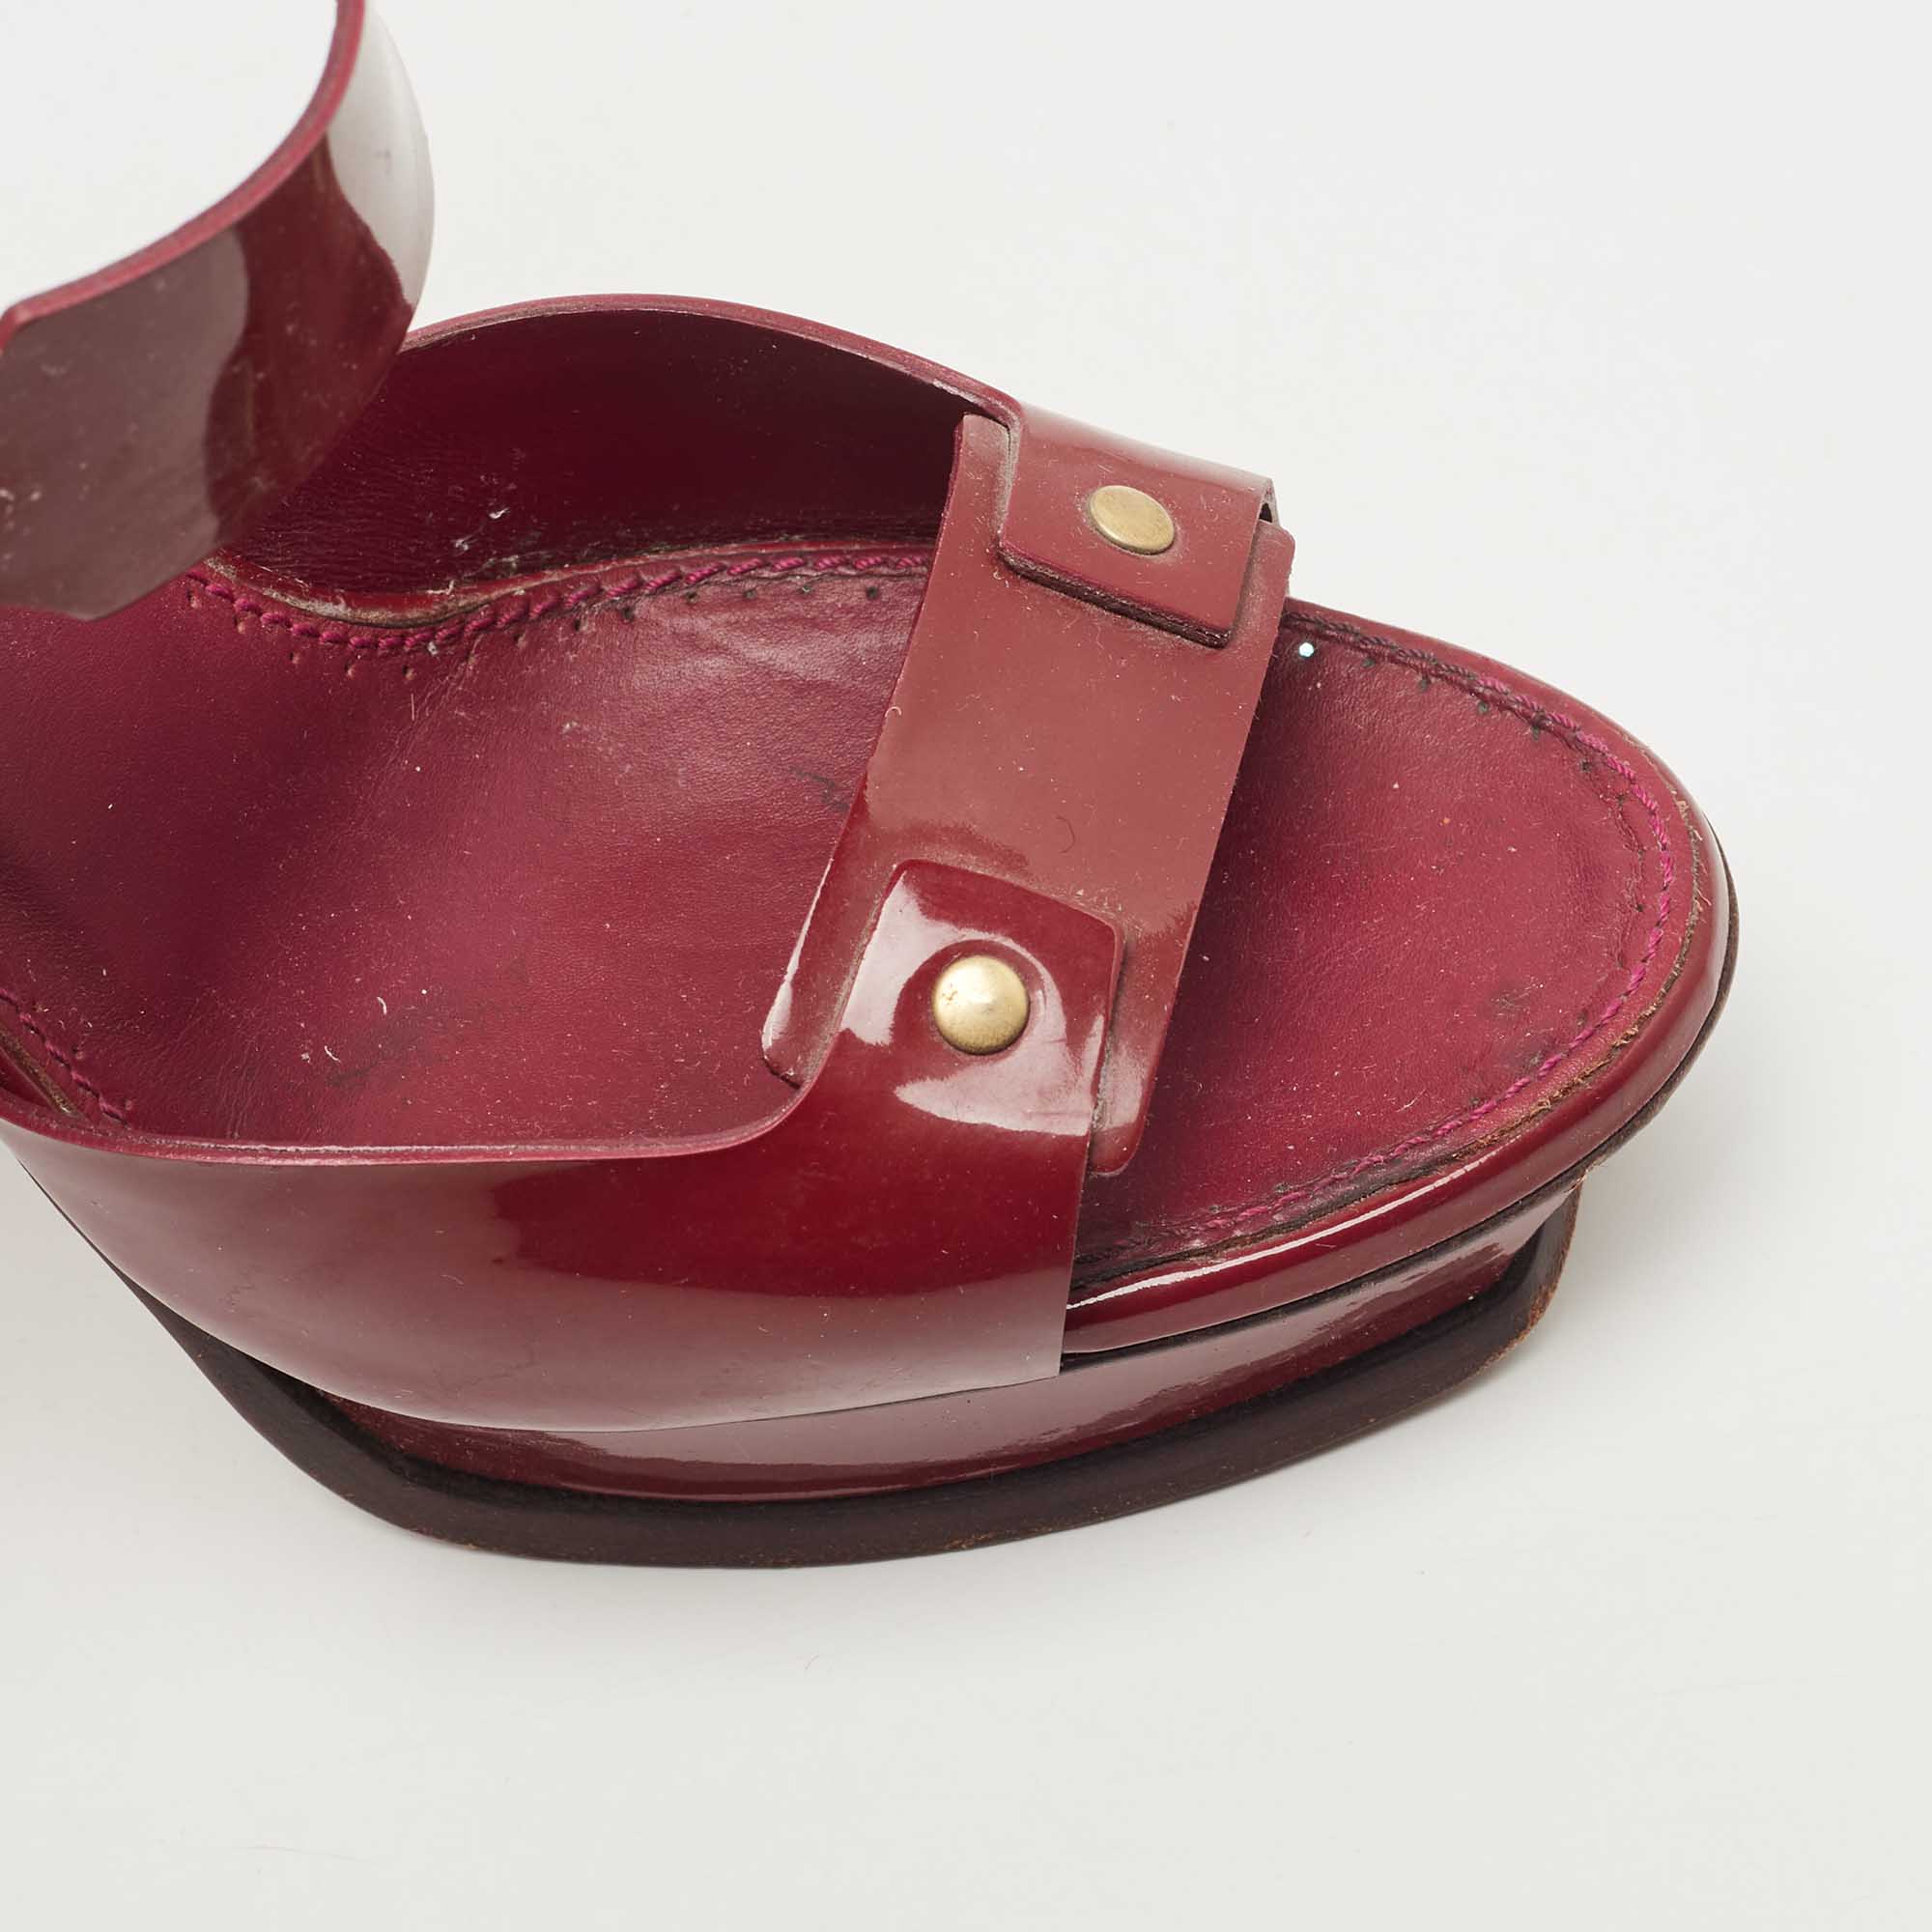 Saint Laurent Plum Patent Leather Platform Ankle Strap Sandals Size 40